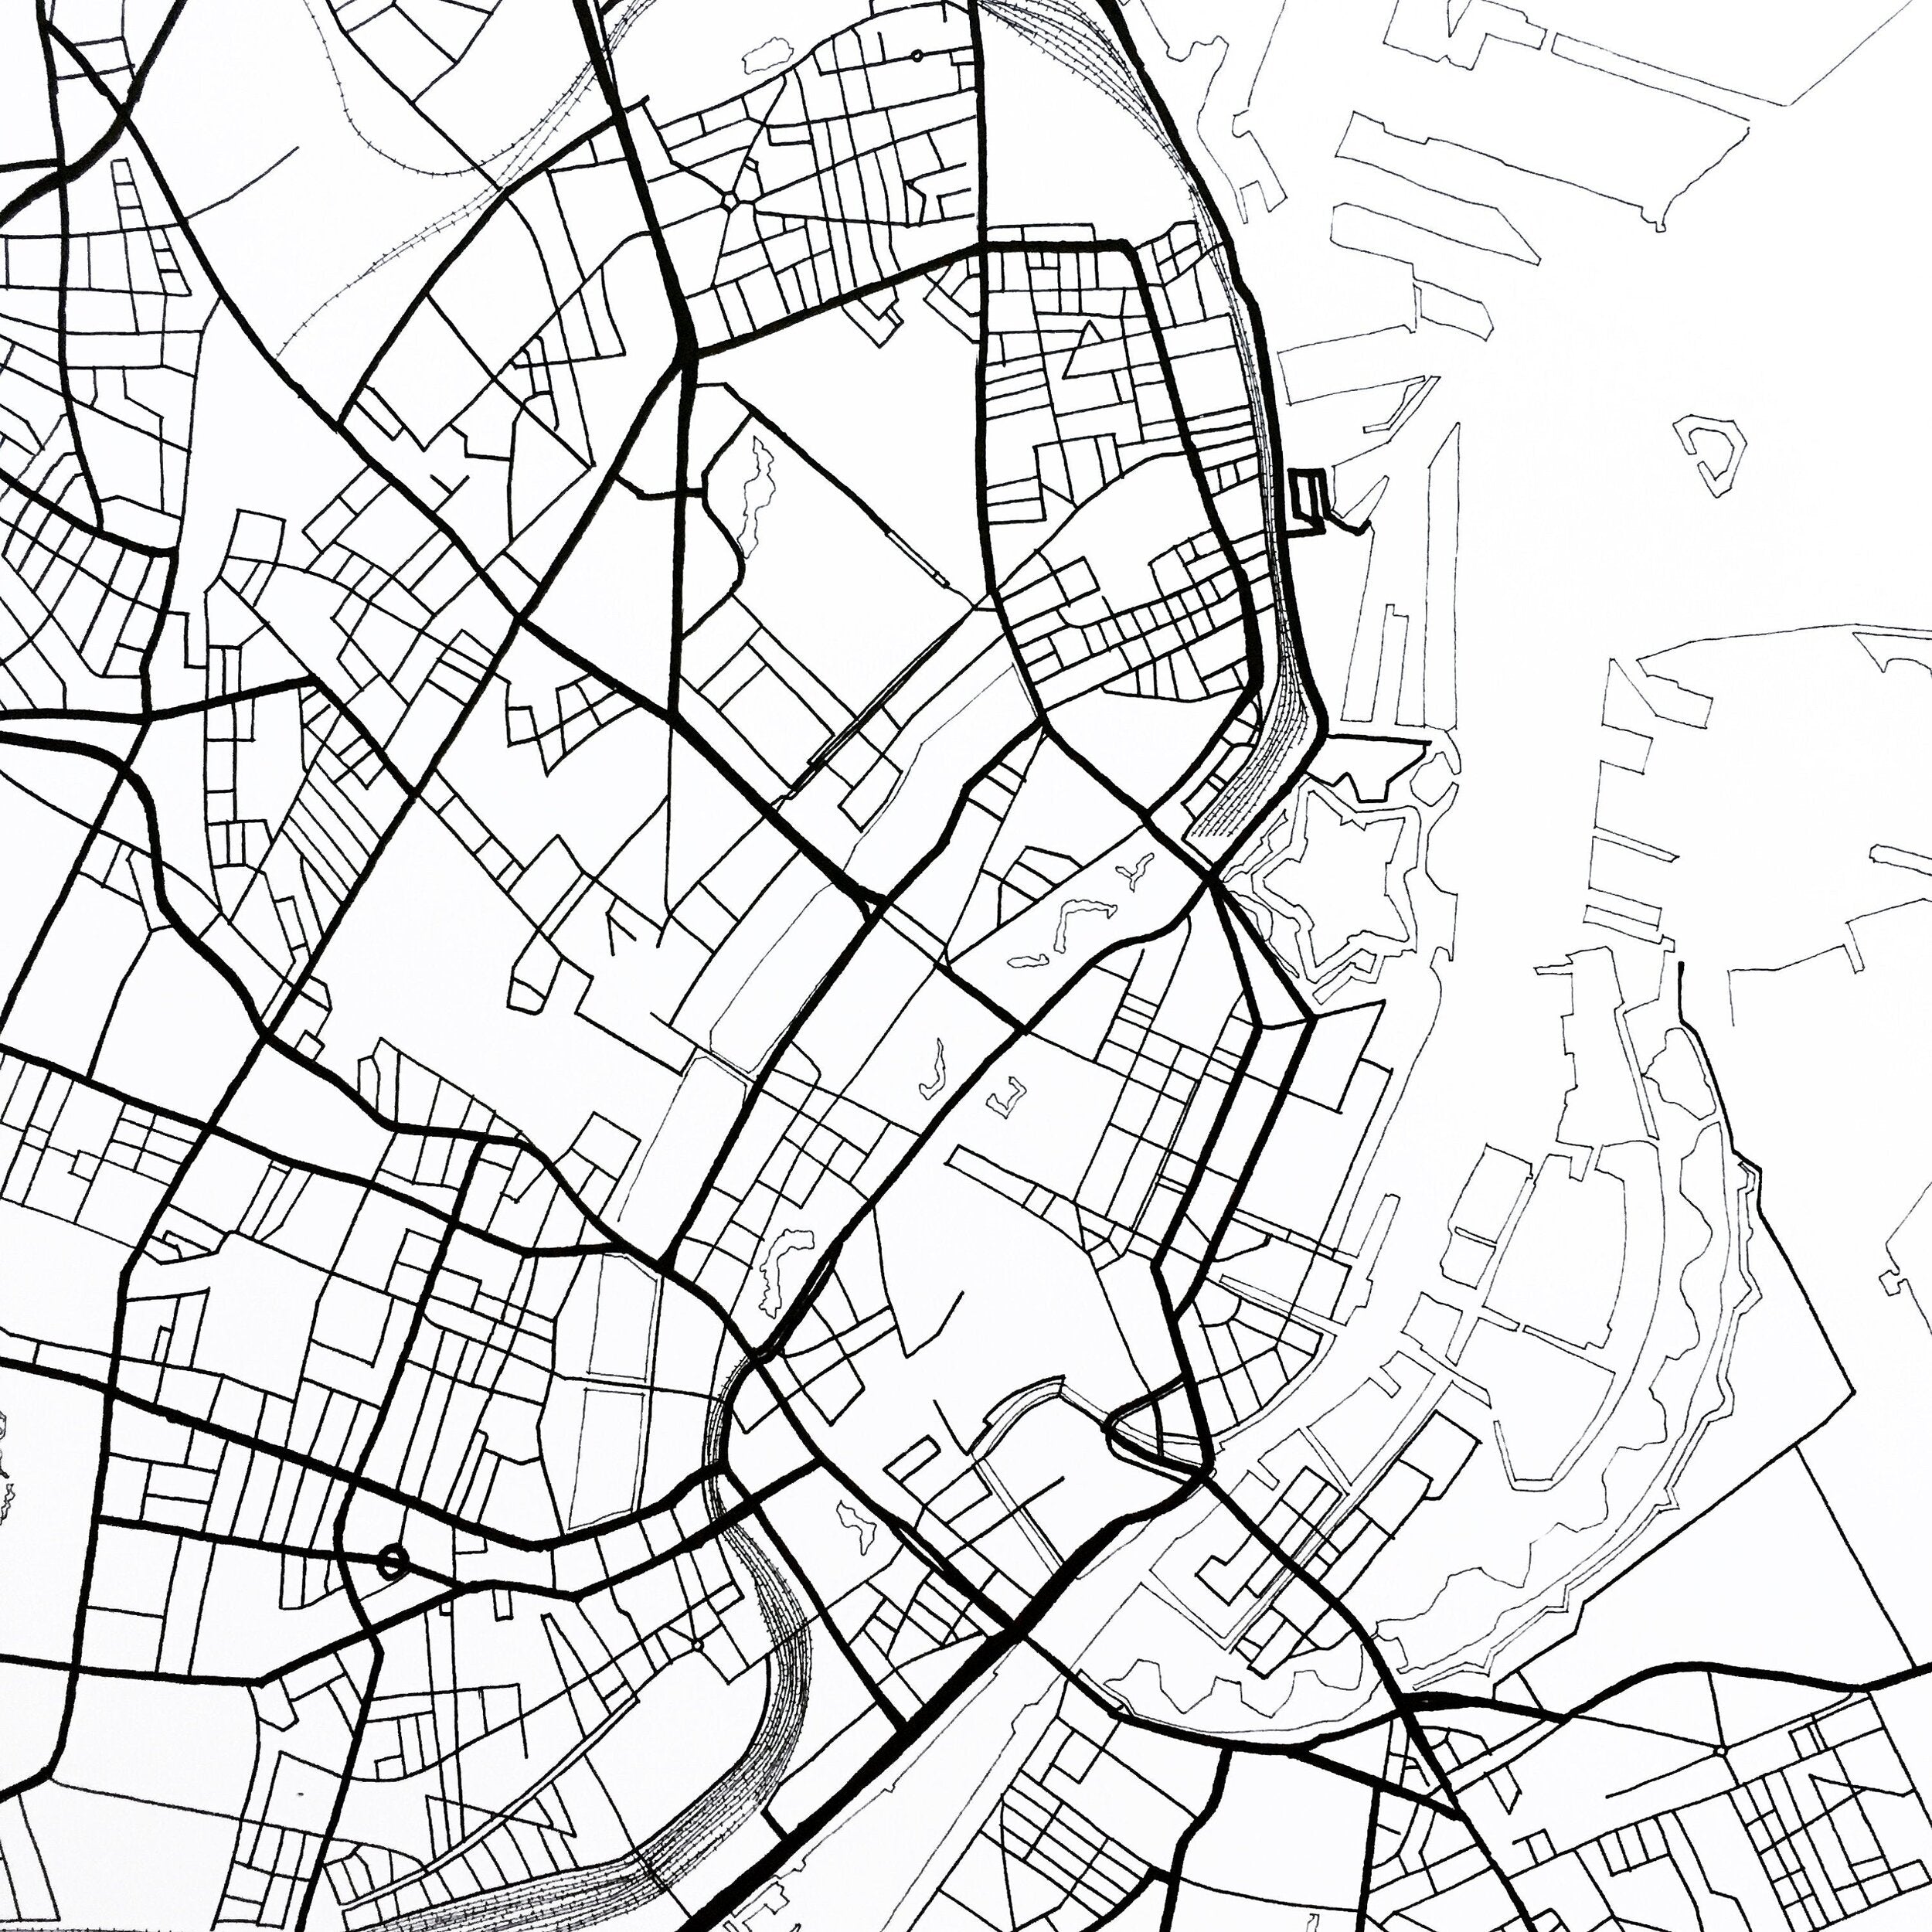 COPENHAGEN City Lines Map: PRINT